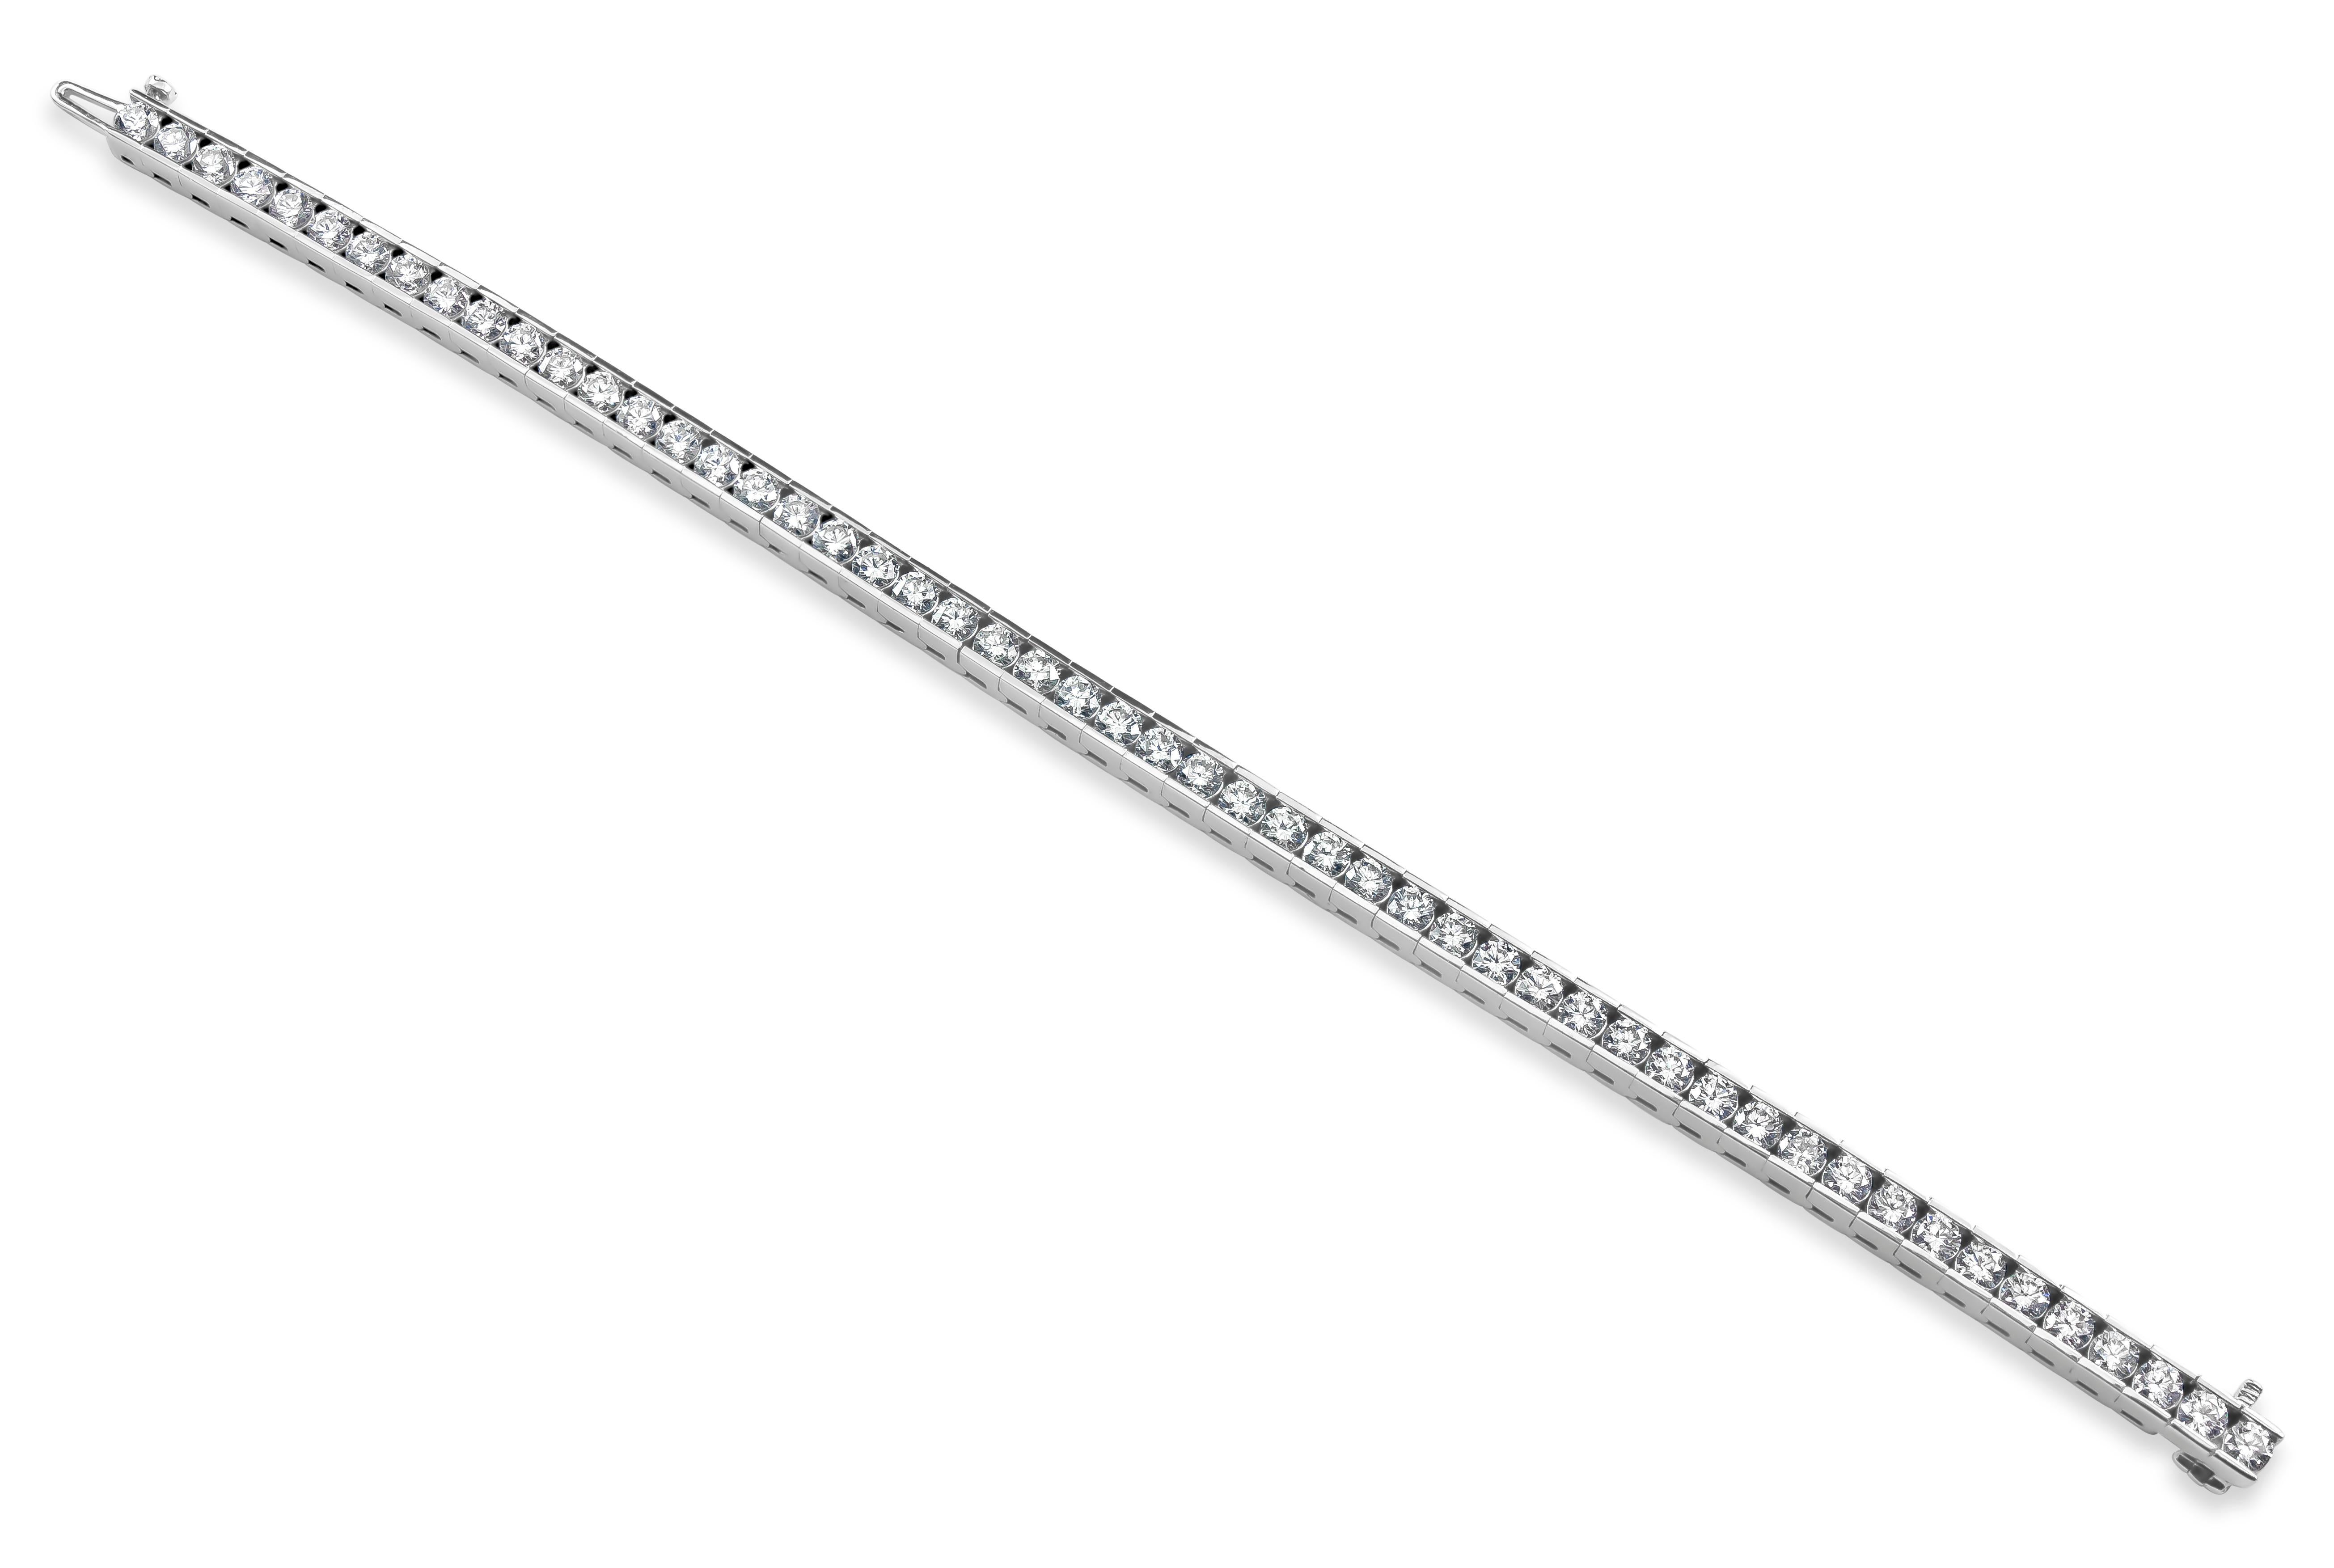 Ce bracelet tennis moderne présente 6,82 carats de diamants ronds et brillants, sertis dans un canal en or blanc 14 carats. 

Style disponible dans différentes gammes de prix. Les prix sont basés sur votre sélection des 4C : Carat, Color, Clarity,